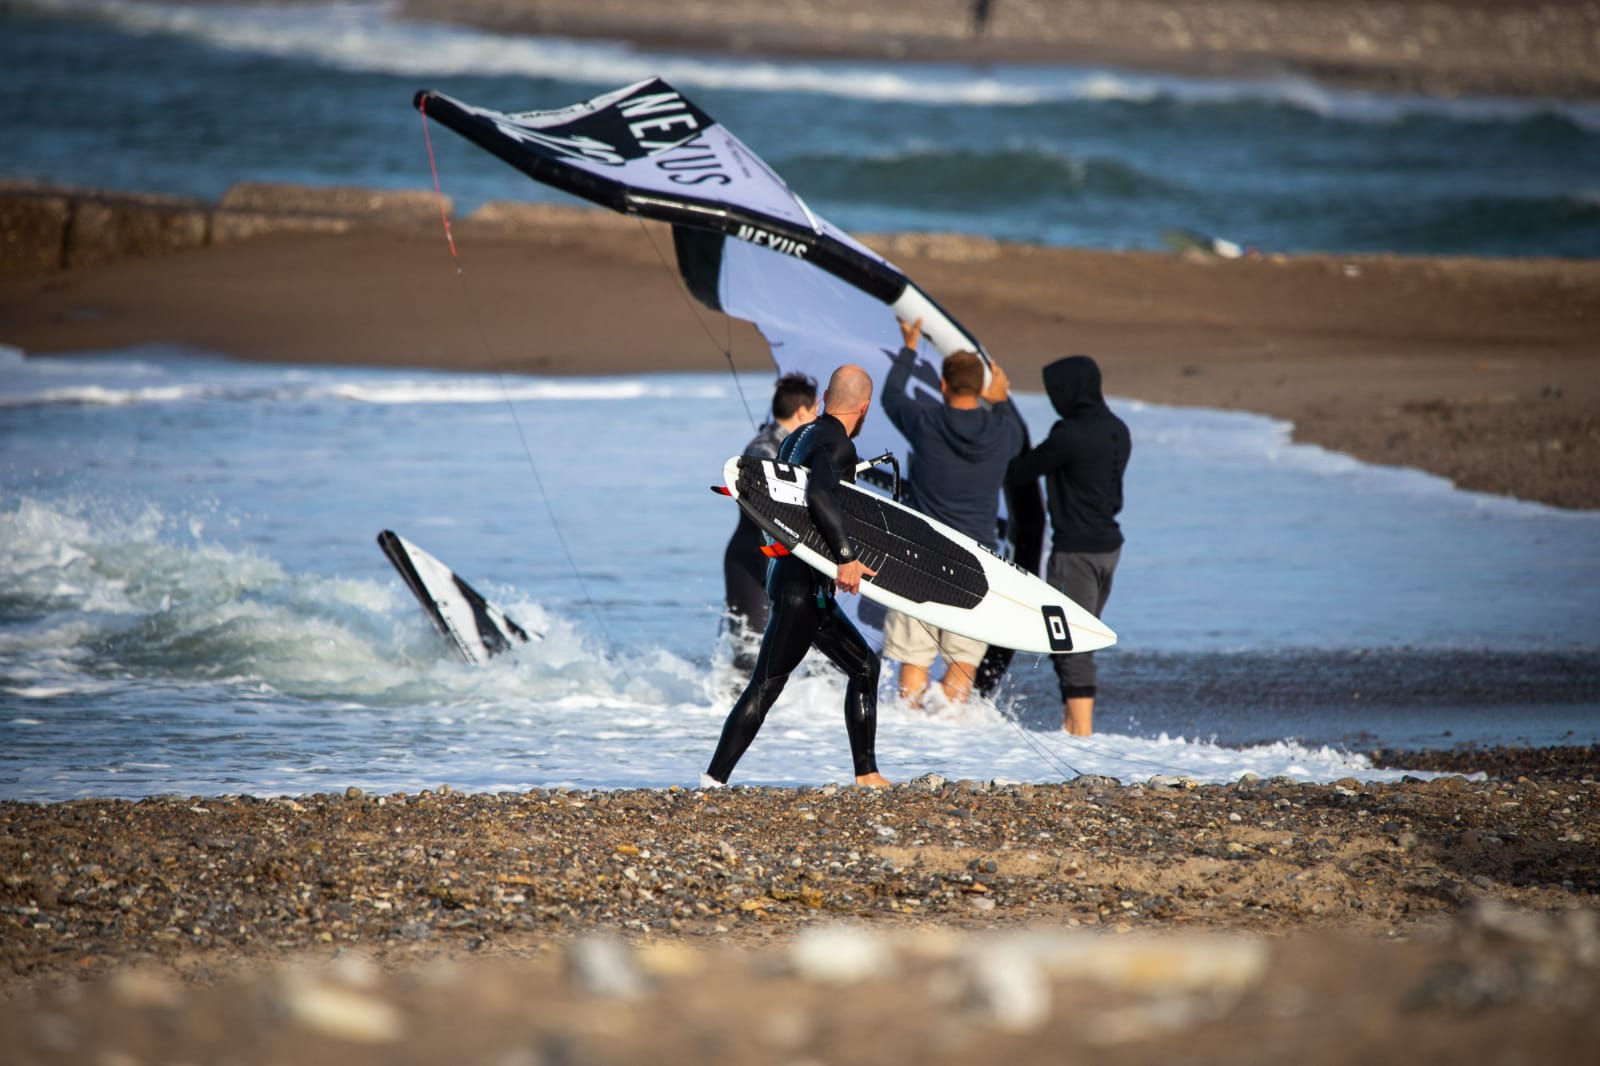 Auf dem Bild erkennen wir einen Kitesurfer der mit seinem Waveboard aus dem wasser geht, der Kiteschirm wird von drei Menschen festgehalten.